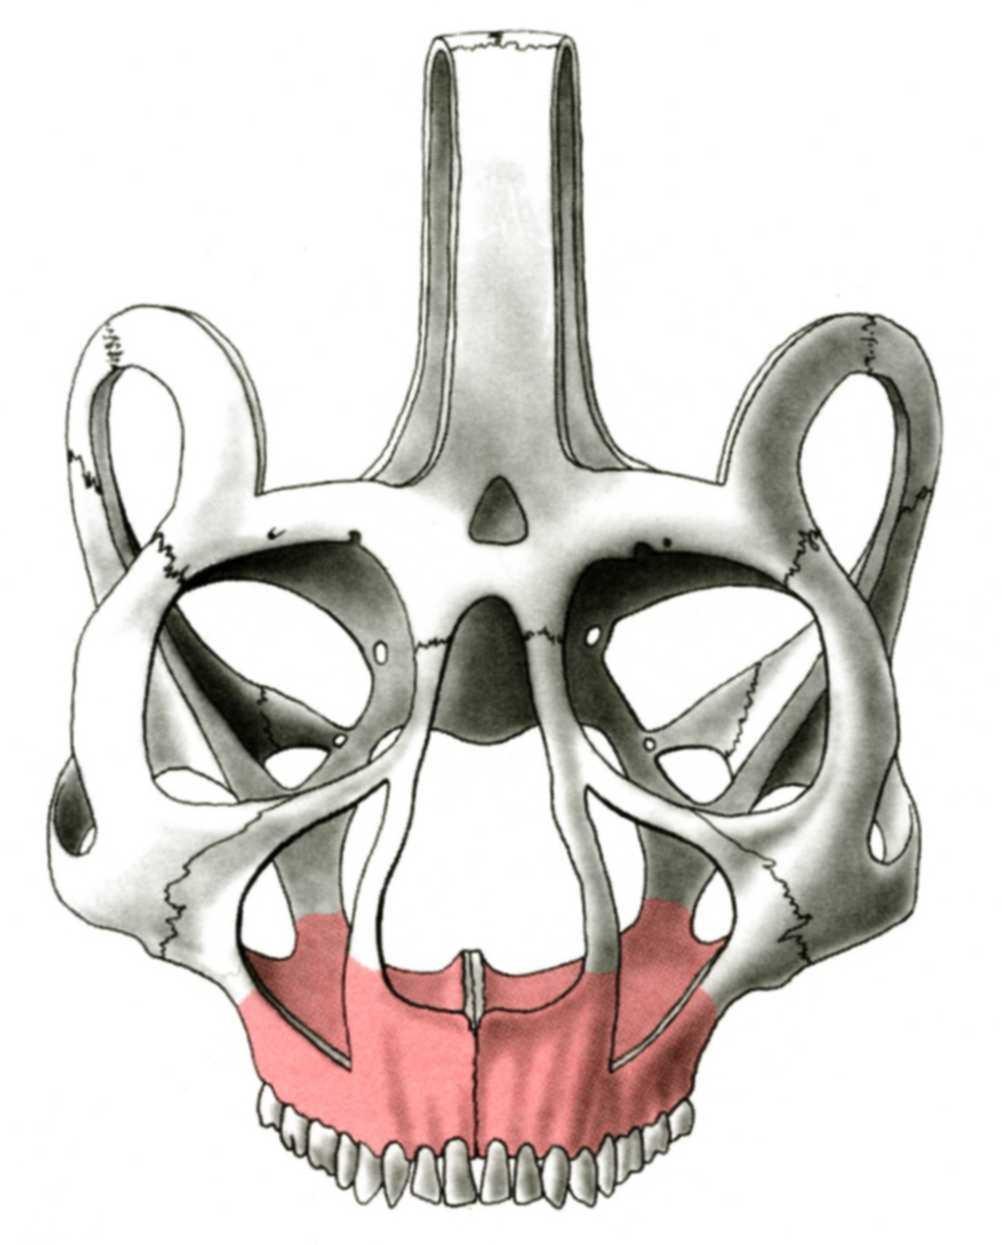 Vertical buttress nasomaxillary zygomaticomaxillary pterygomaxillary Tuber maxillae Sinus maxillae